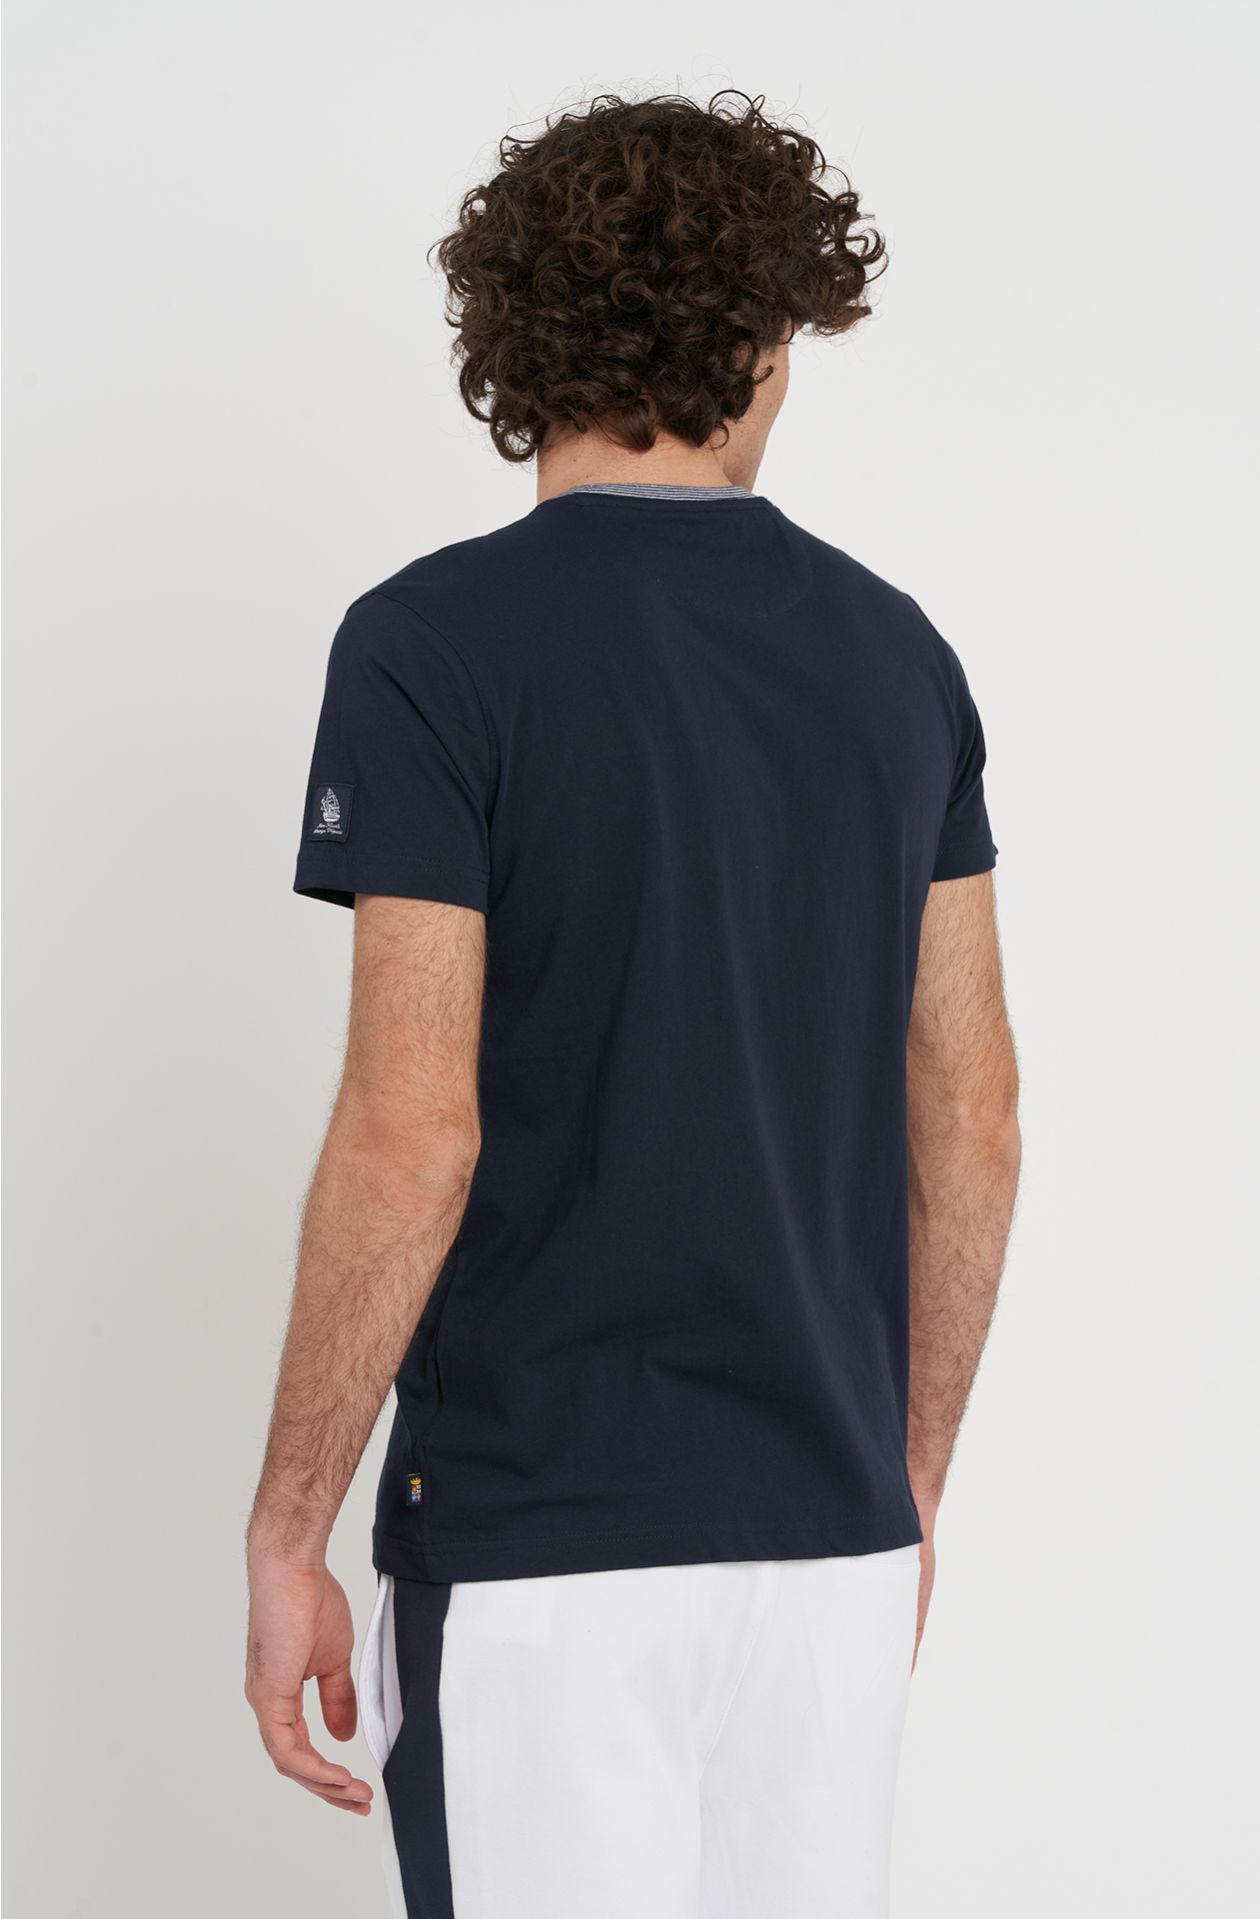 T-shirt in cotone jersey Amerigo Vespucci